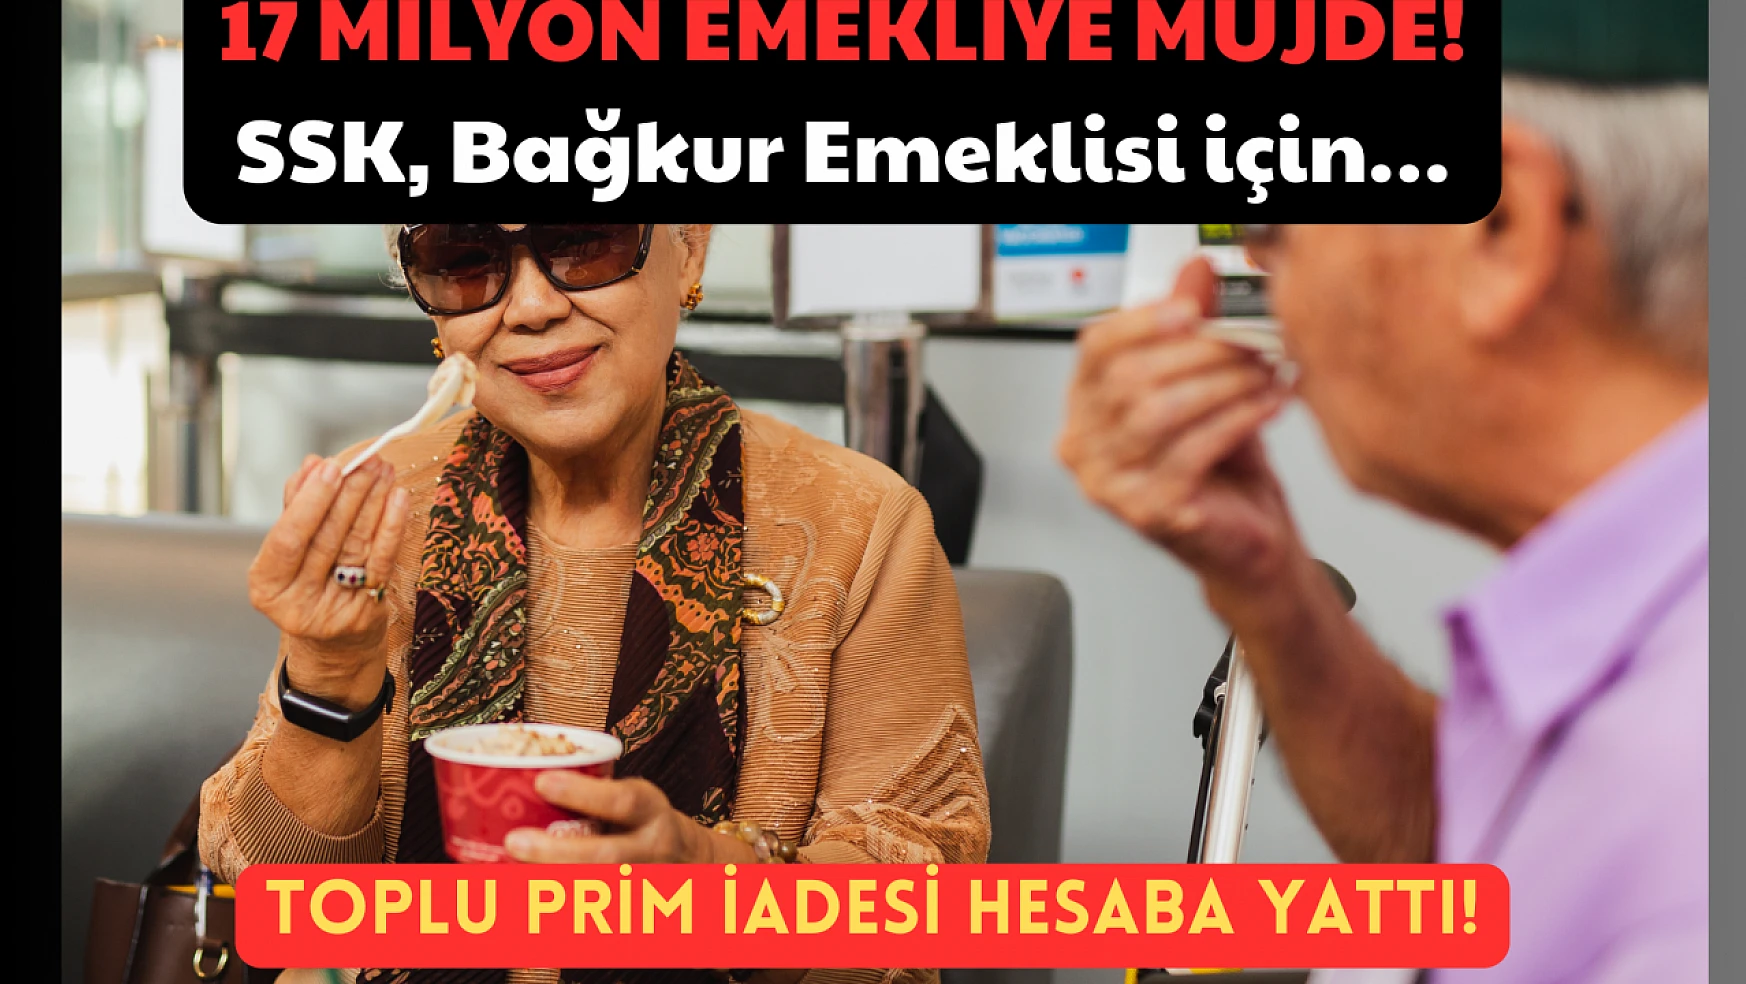 17 Milyon Emekliye Müjde: Toplu Prim İadesi Hesaba Yattı! SSK, Bağkur Emeklisi için…